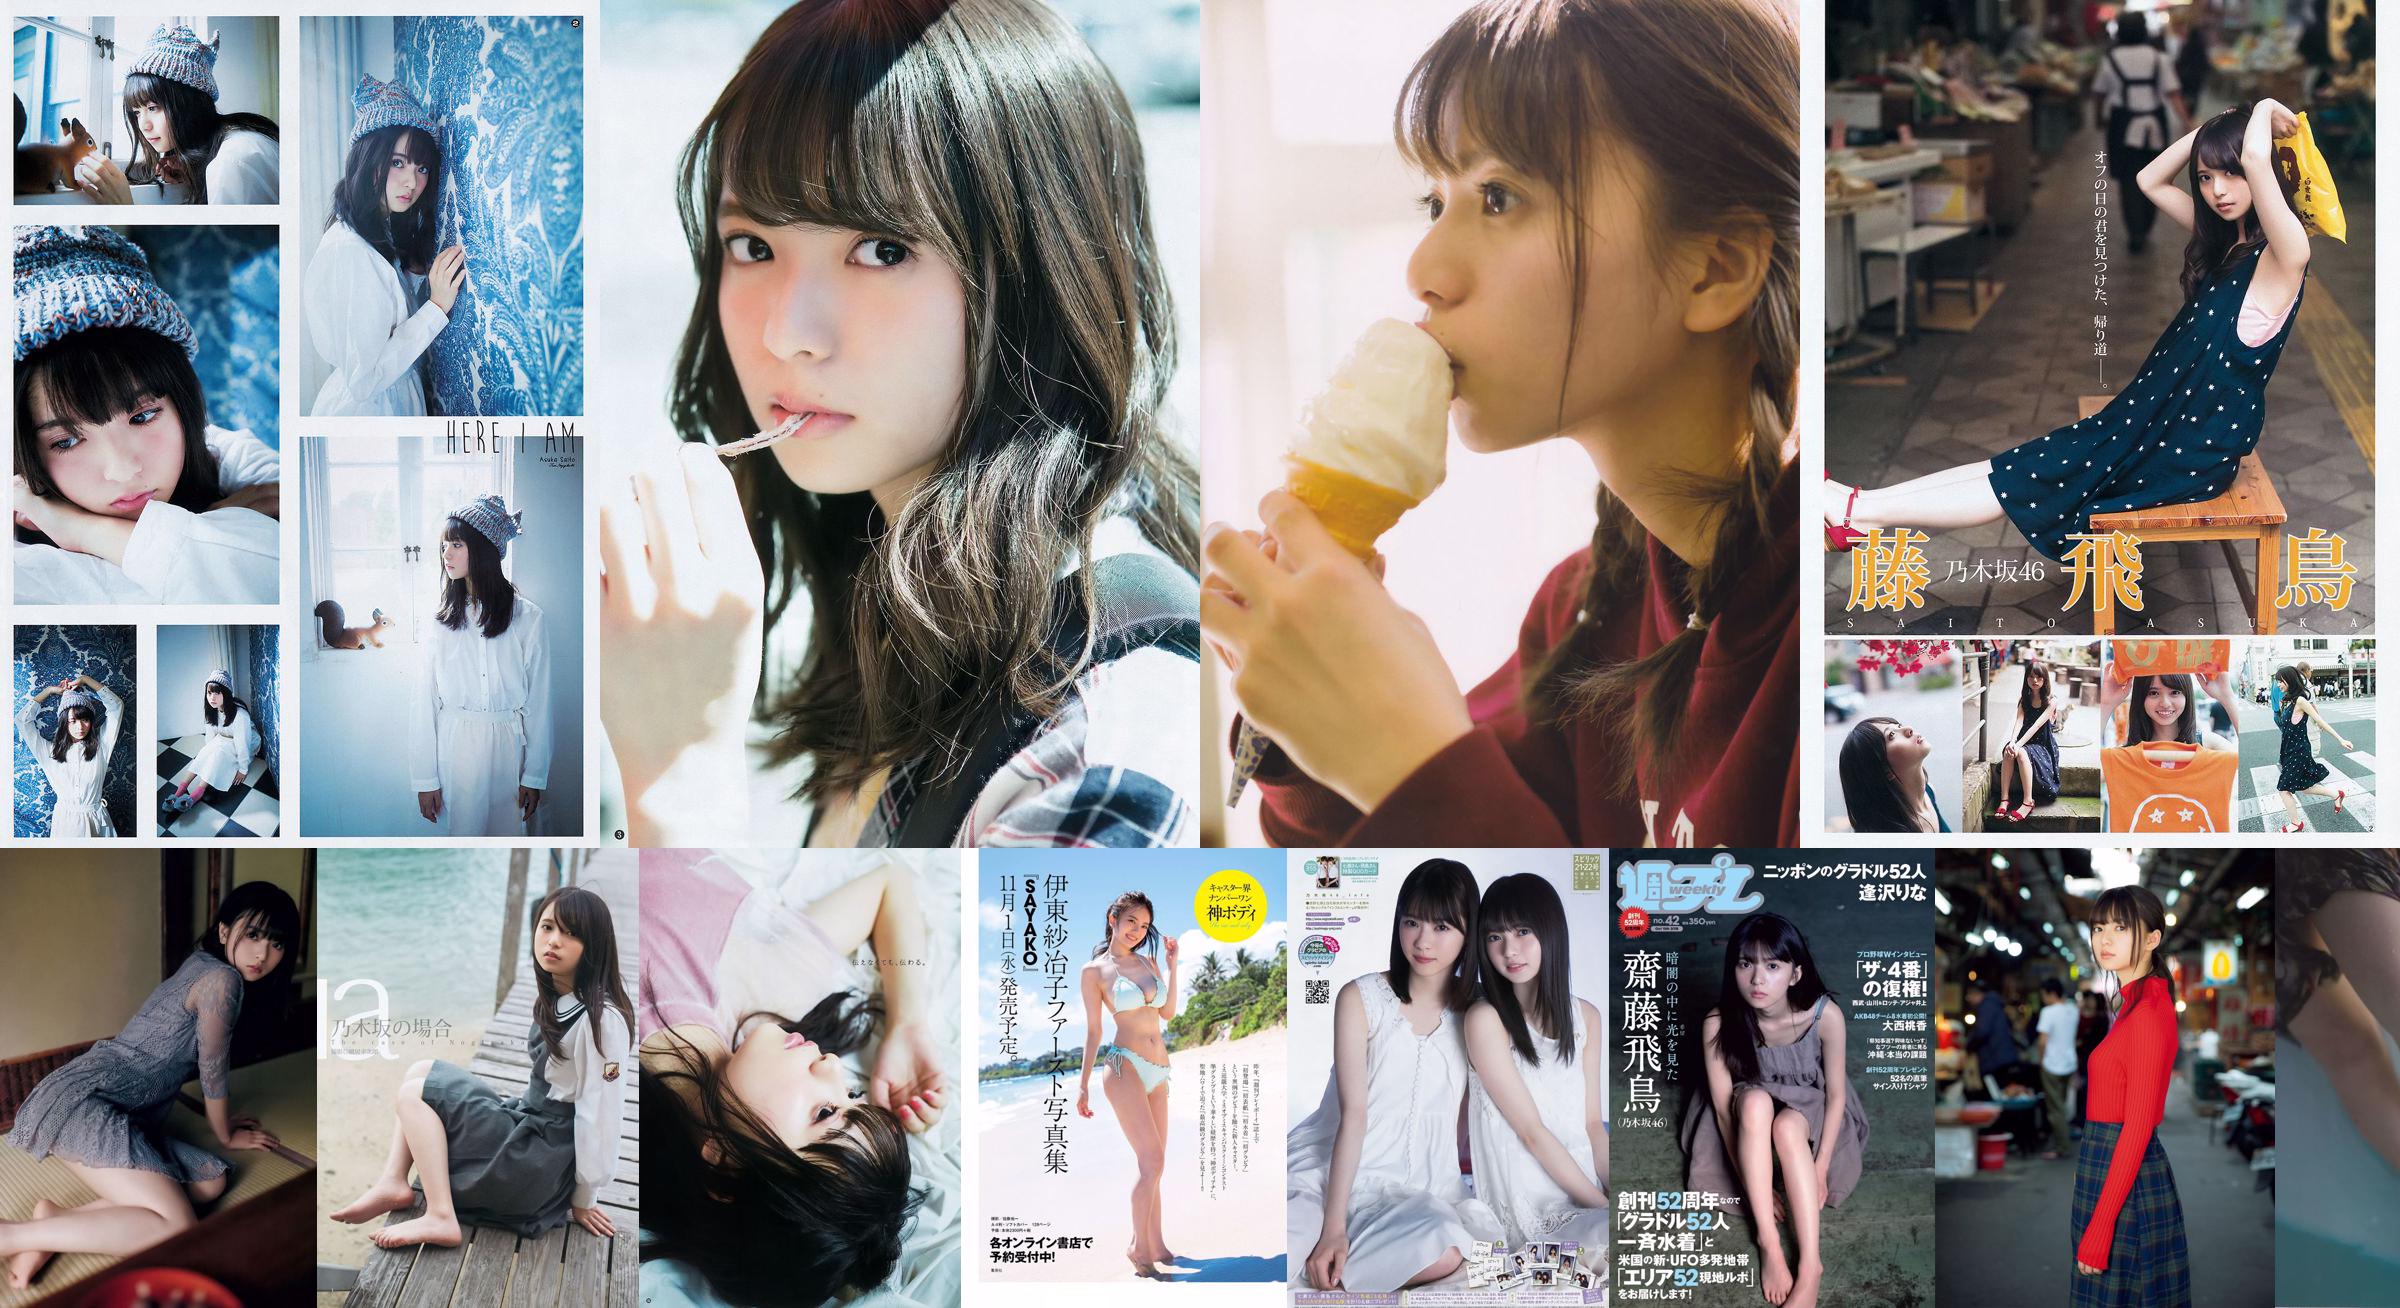 Asuka Saito Minami Hoshino [Weekly Young Jump Weekly Young Jump] 2015 No.49 Photo Mori No.086fc5 Page 1